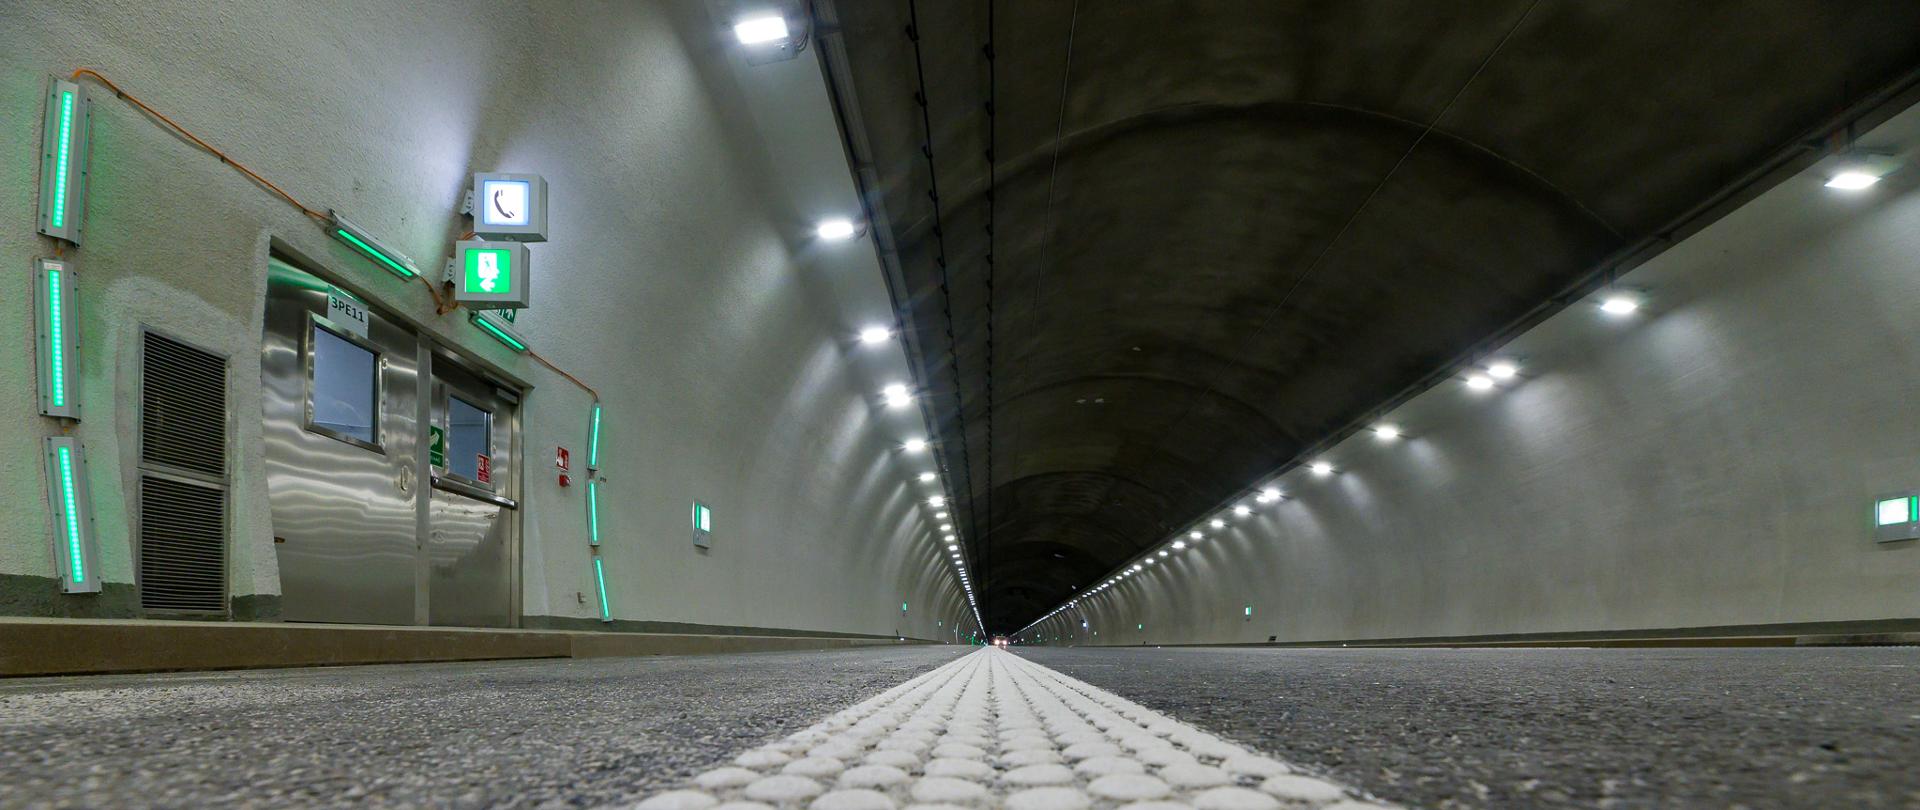 S7 Lubień - Rabka-Zdrój - przygotowania do otwarcia tunelu